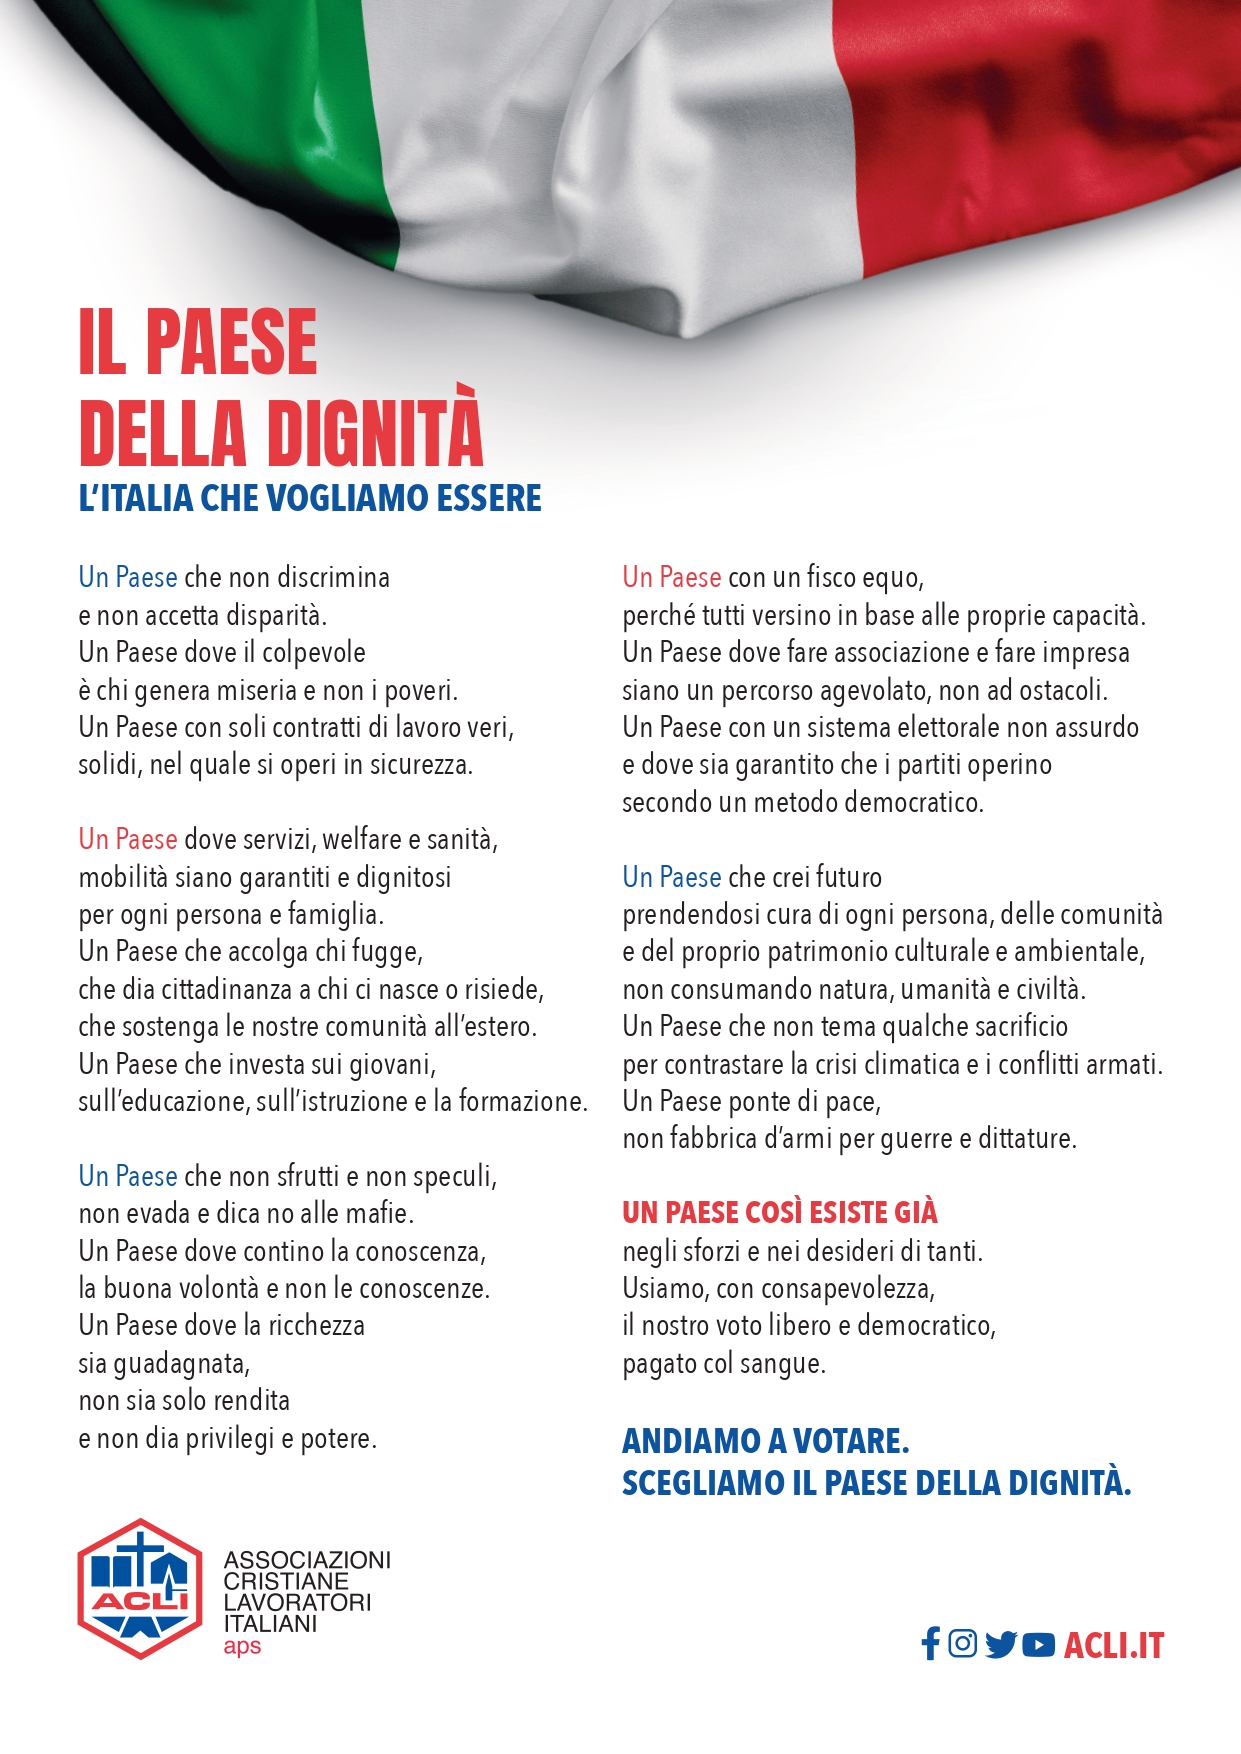 Salerno: manifesto ACLI per campagna elettorale “Il Paese della Dignità – l’Italia che vogliamo essere